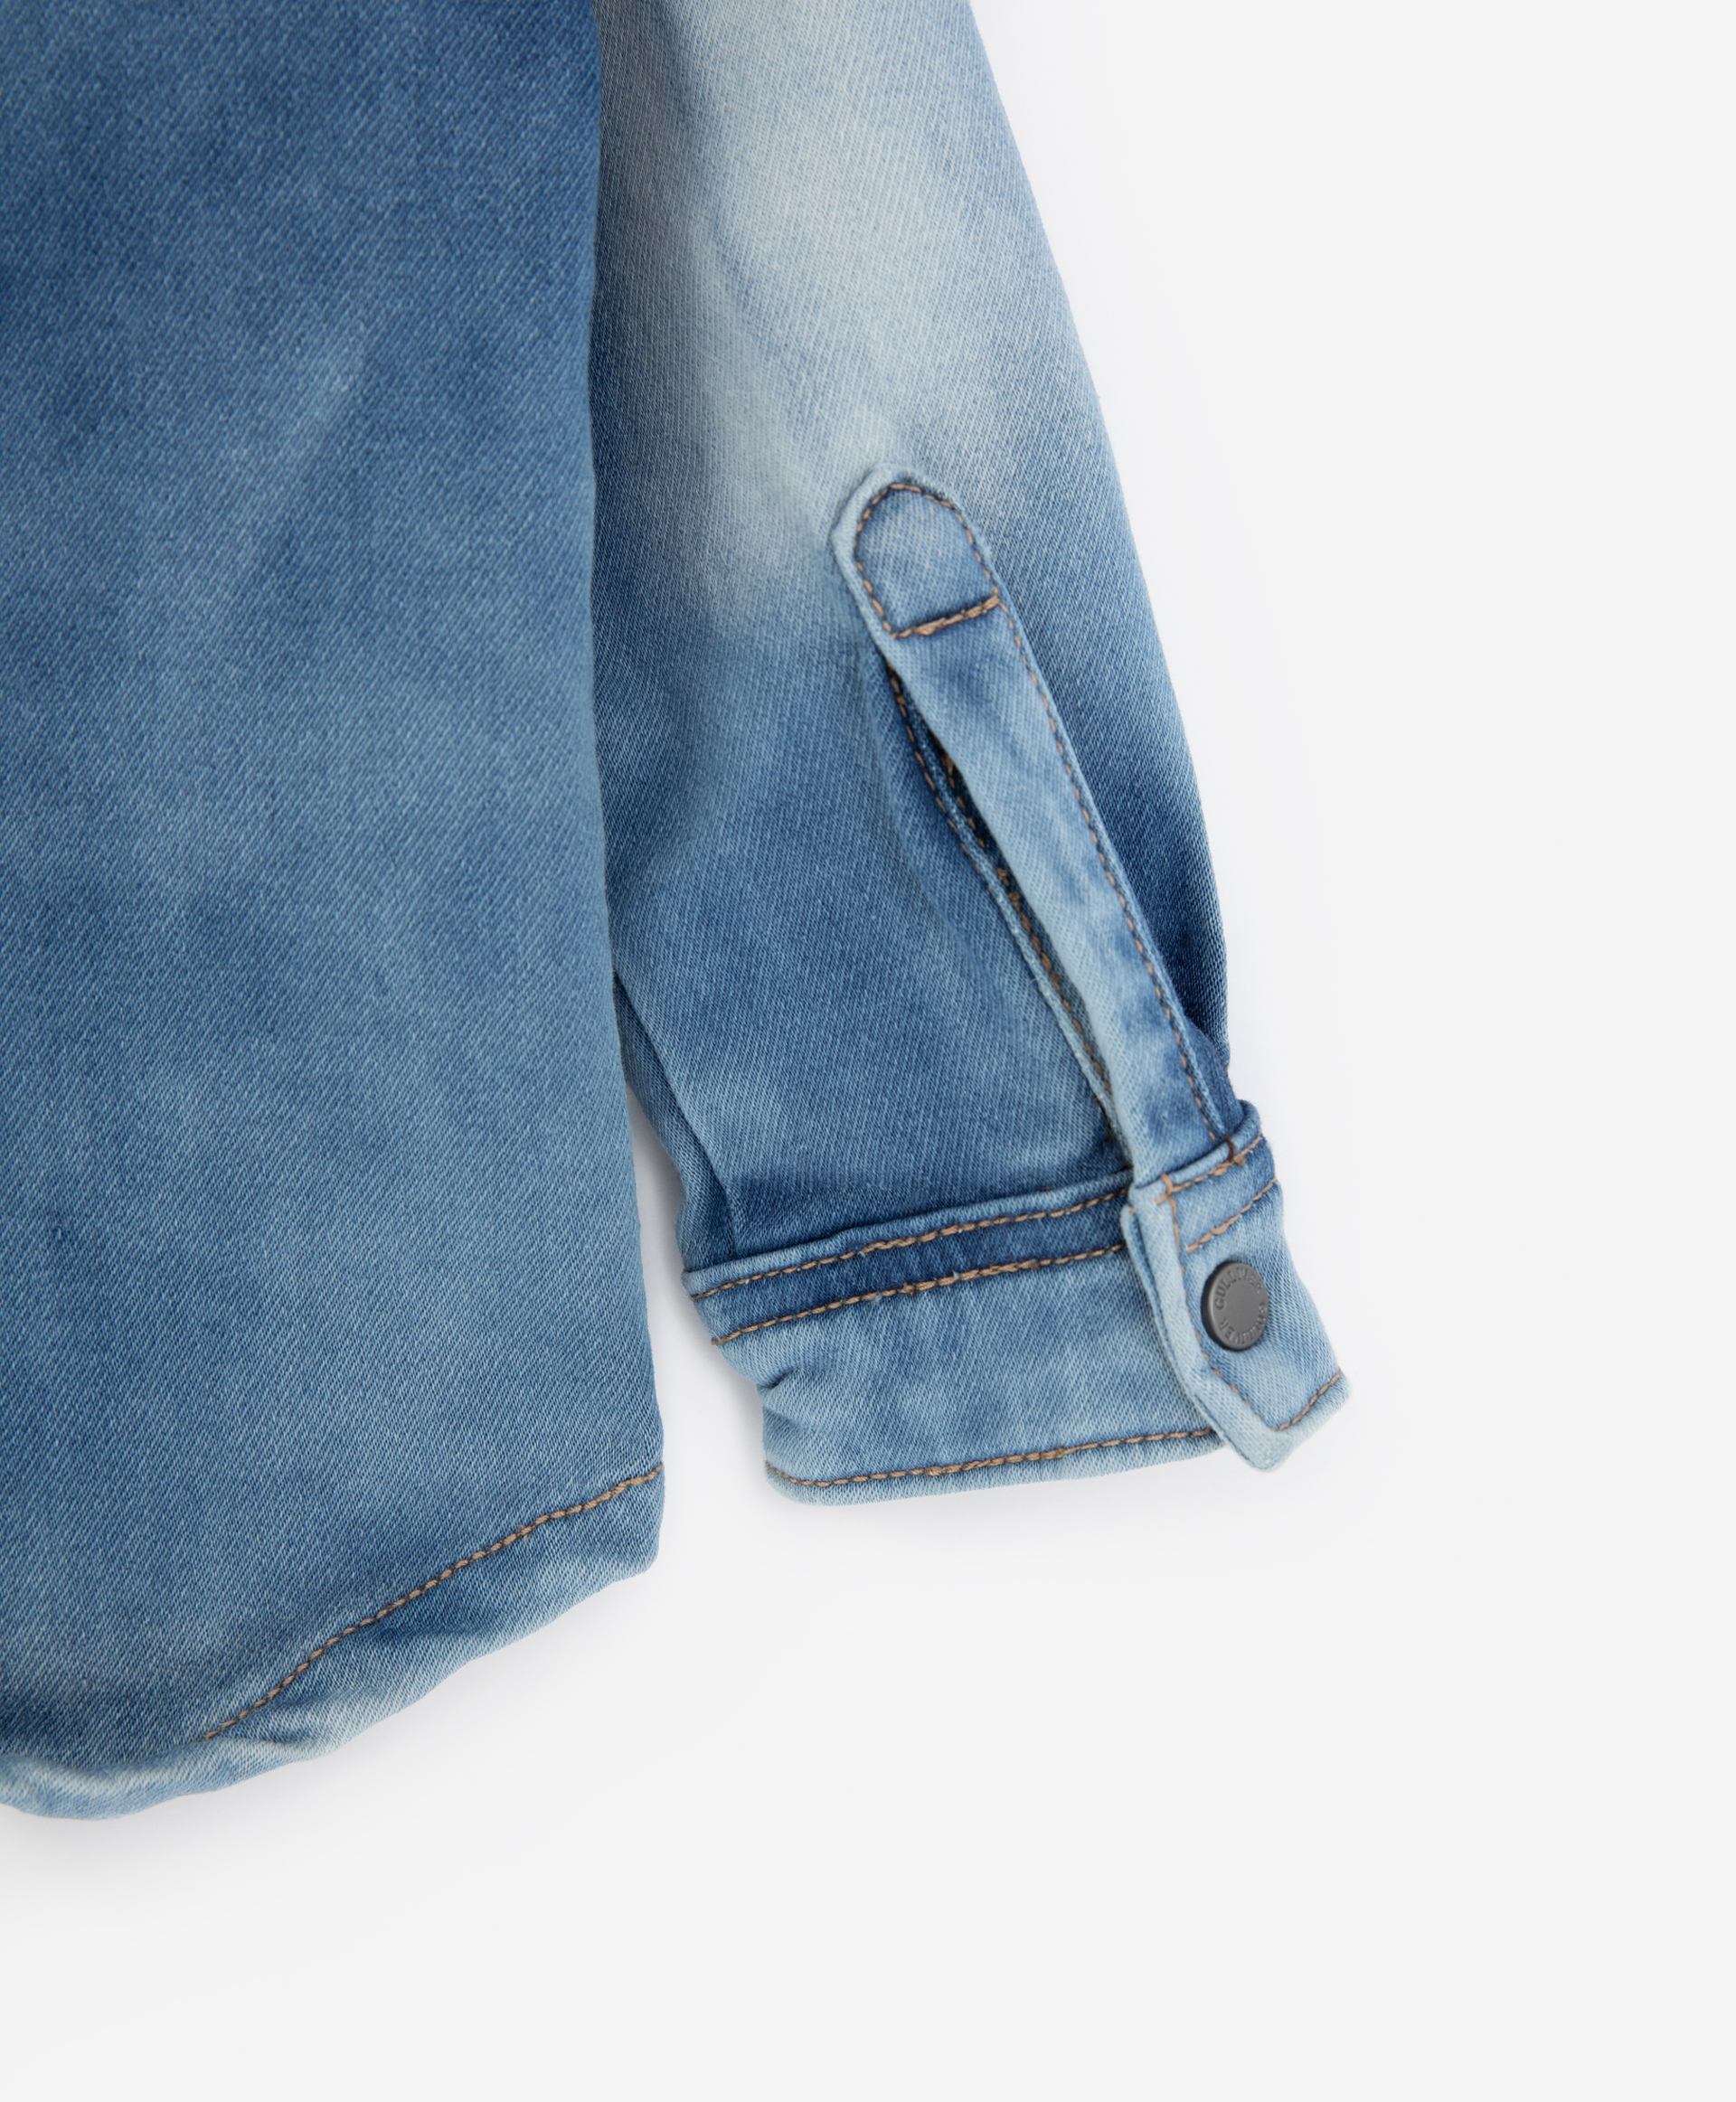 Рубашка джинсовая синяя Gulliver 22033BBC4802, размер 74, цвет синий - фото 3